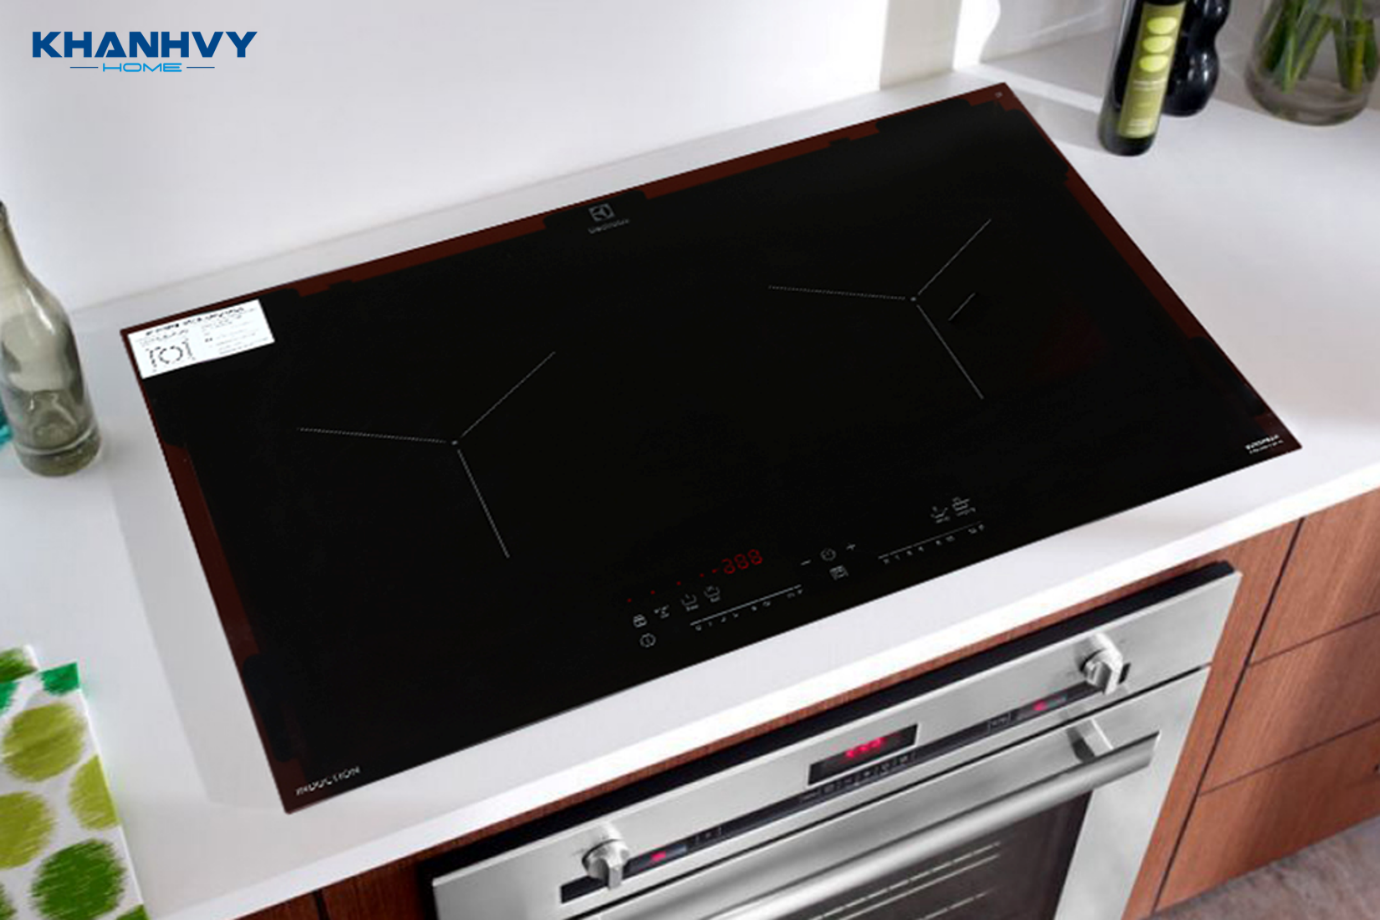  Bếp từ Electrolux EHI7280BB là lựa chọn được người tiêu dùng ưu tiên nhờ chất lượng tốt, thiết kế cao cấp, độ bền cao và tích hợp nhiều công nghệ mới hiện đại giúp nấu ăn nhanh và ngon hơn